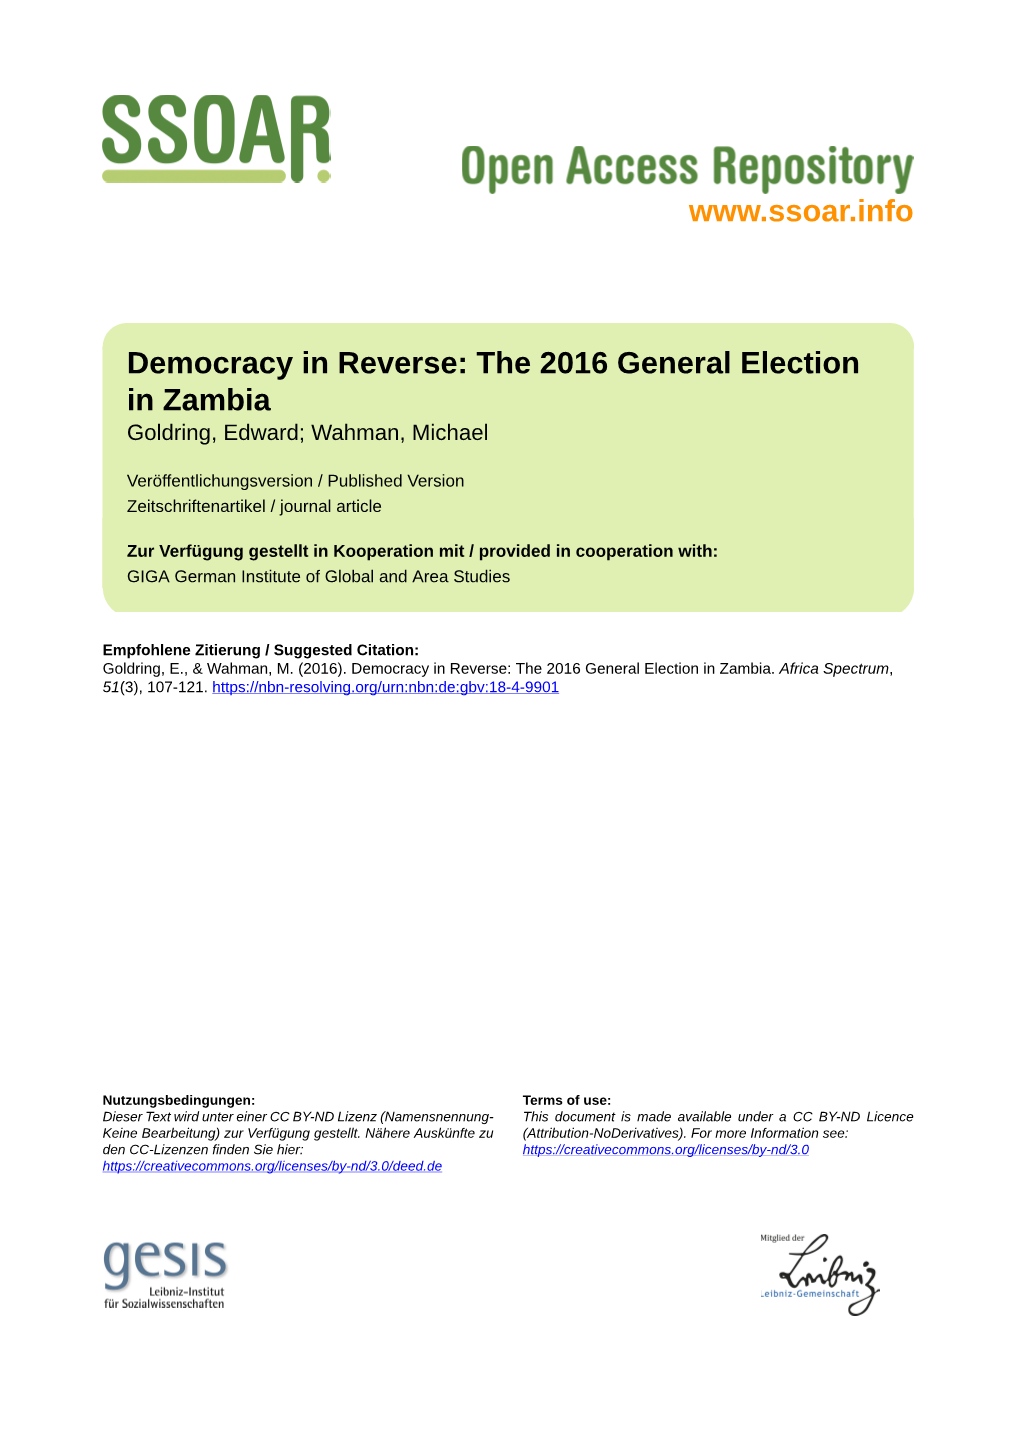 Democracy in Reverse: the 2016 General Election in Zambia Goldring, Edward; Wahman, Michael